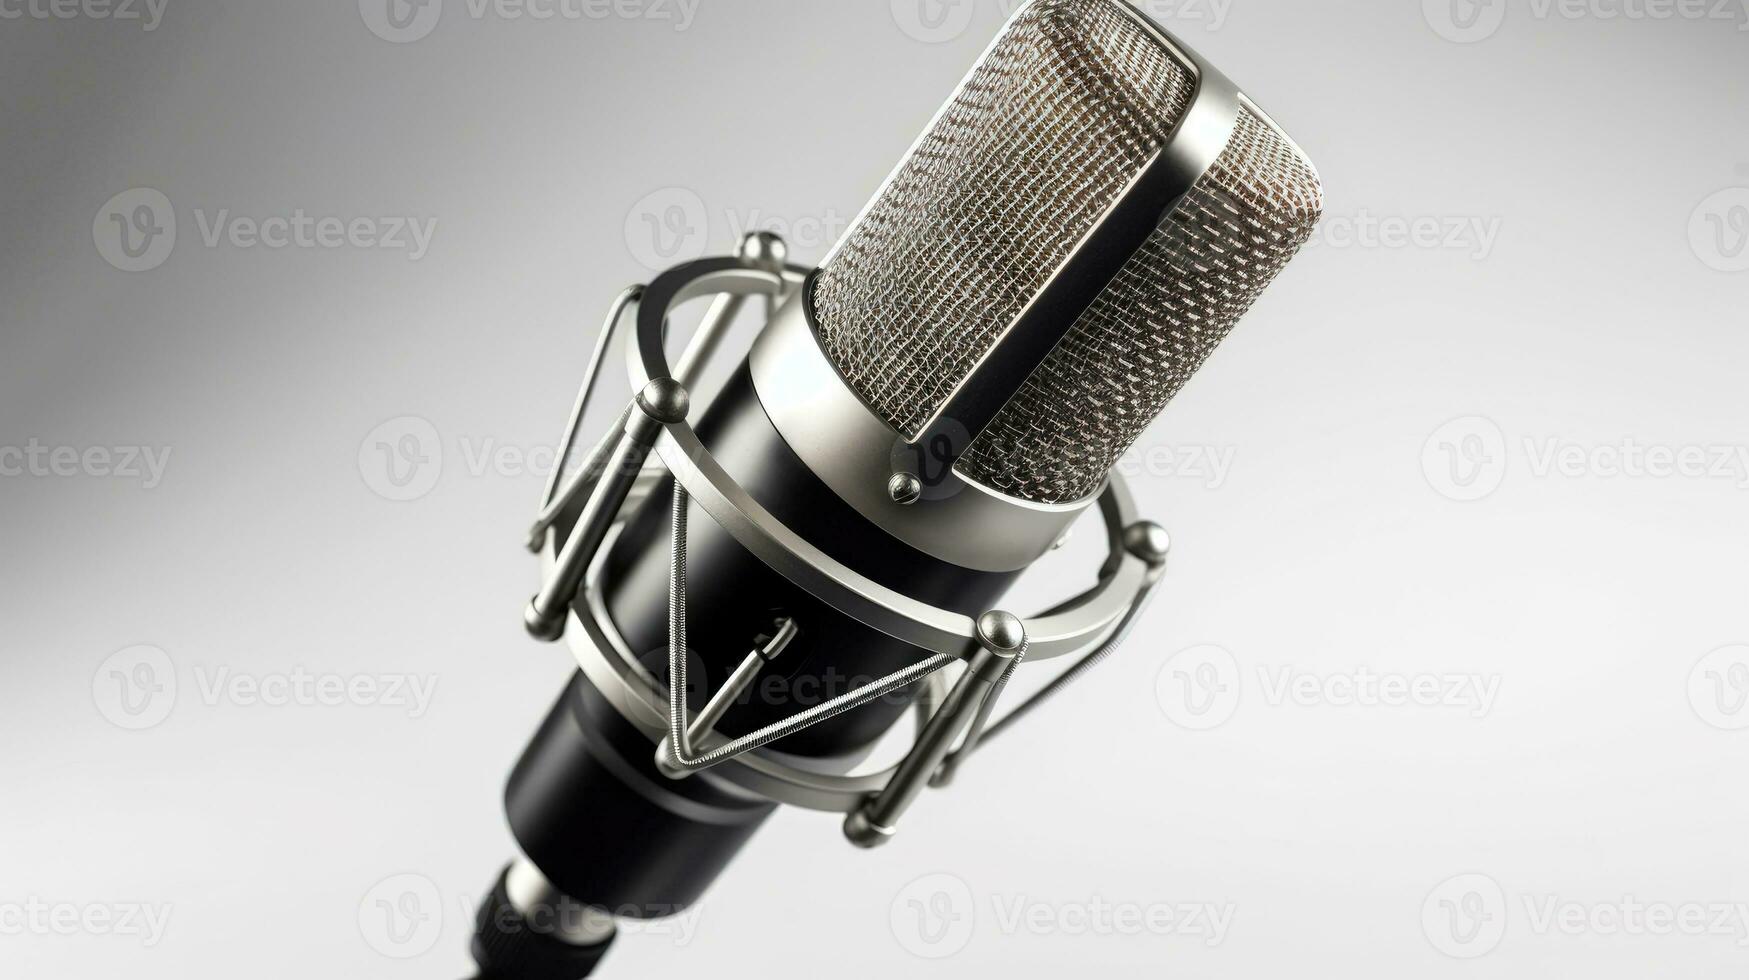 Photo de stock microphone à condensateur dans un studio 796585690